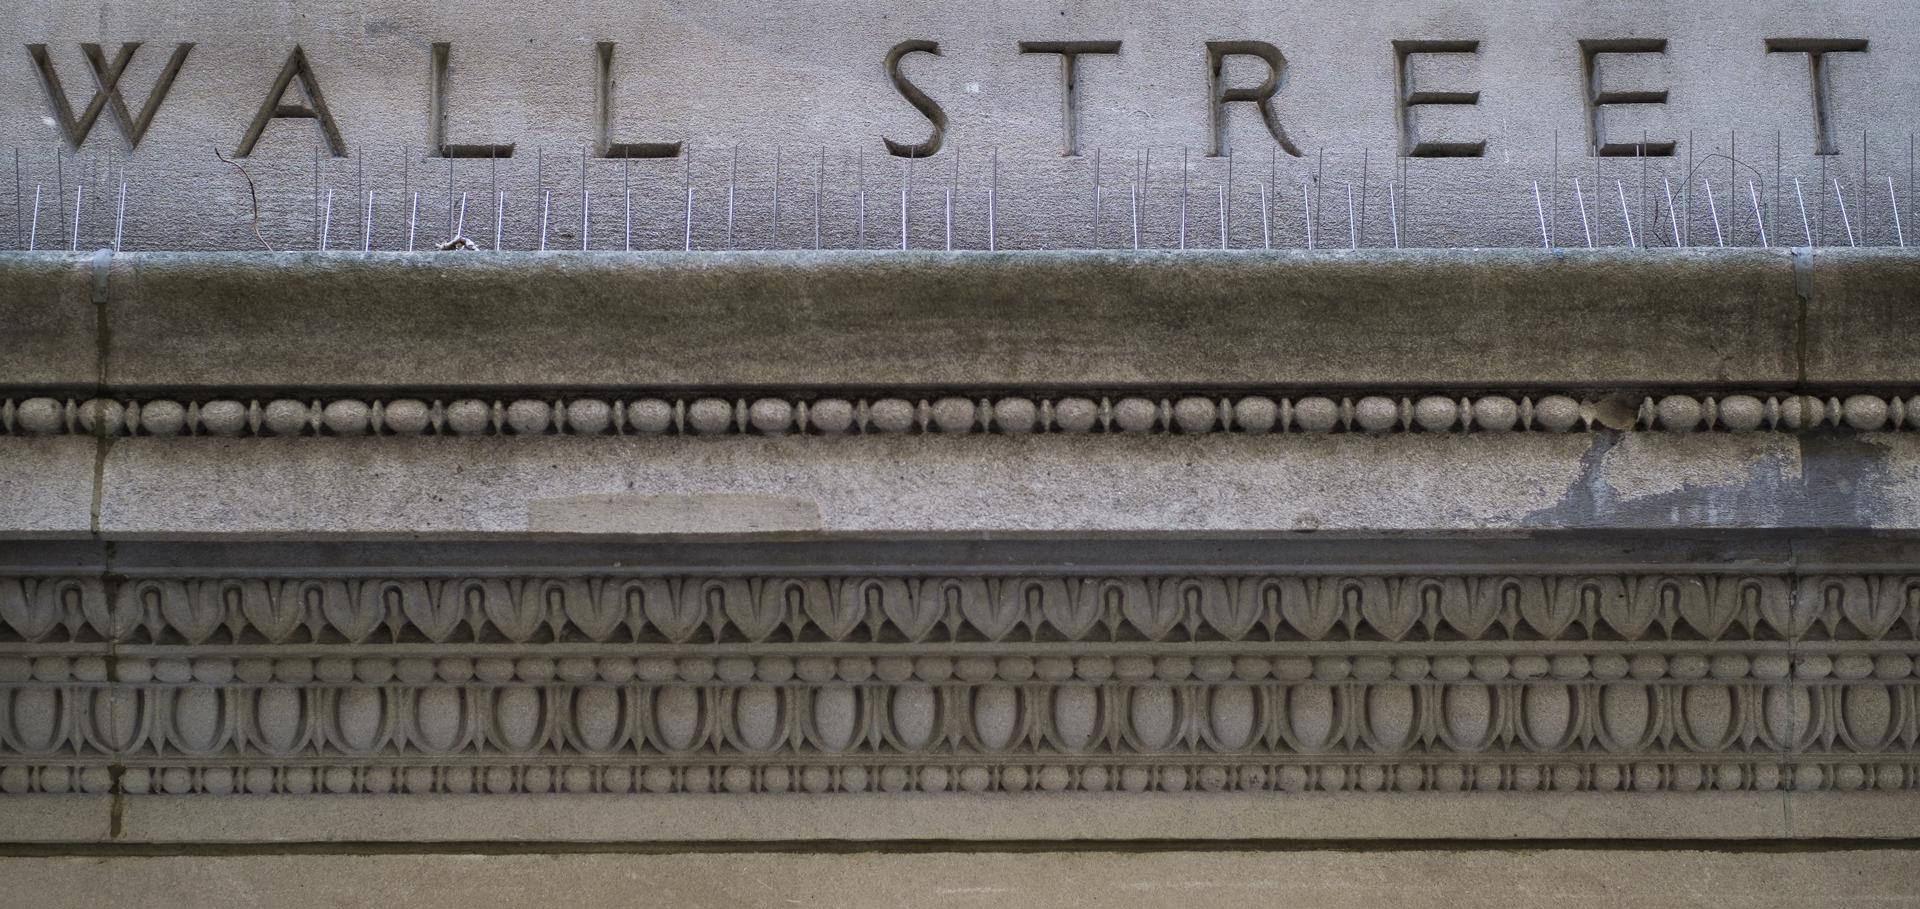 Vista de Wall Street, en una fotografía de archivo. EFE/Justin Lane